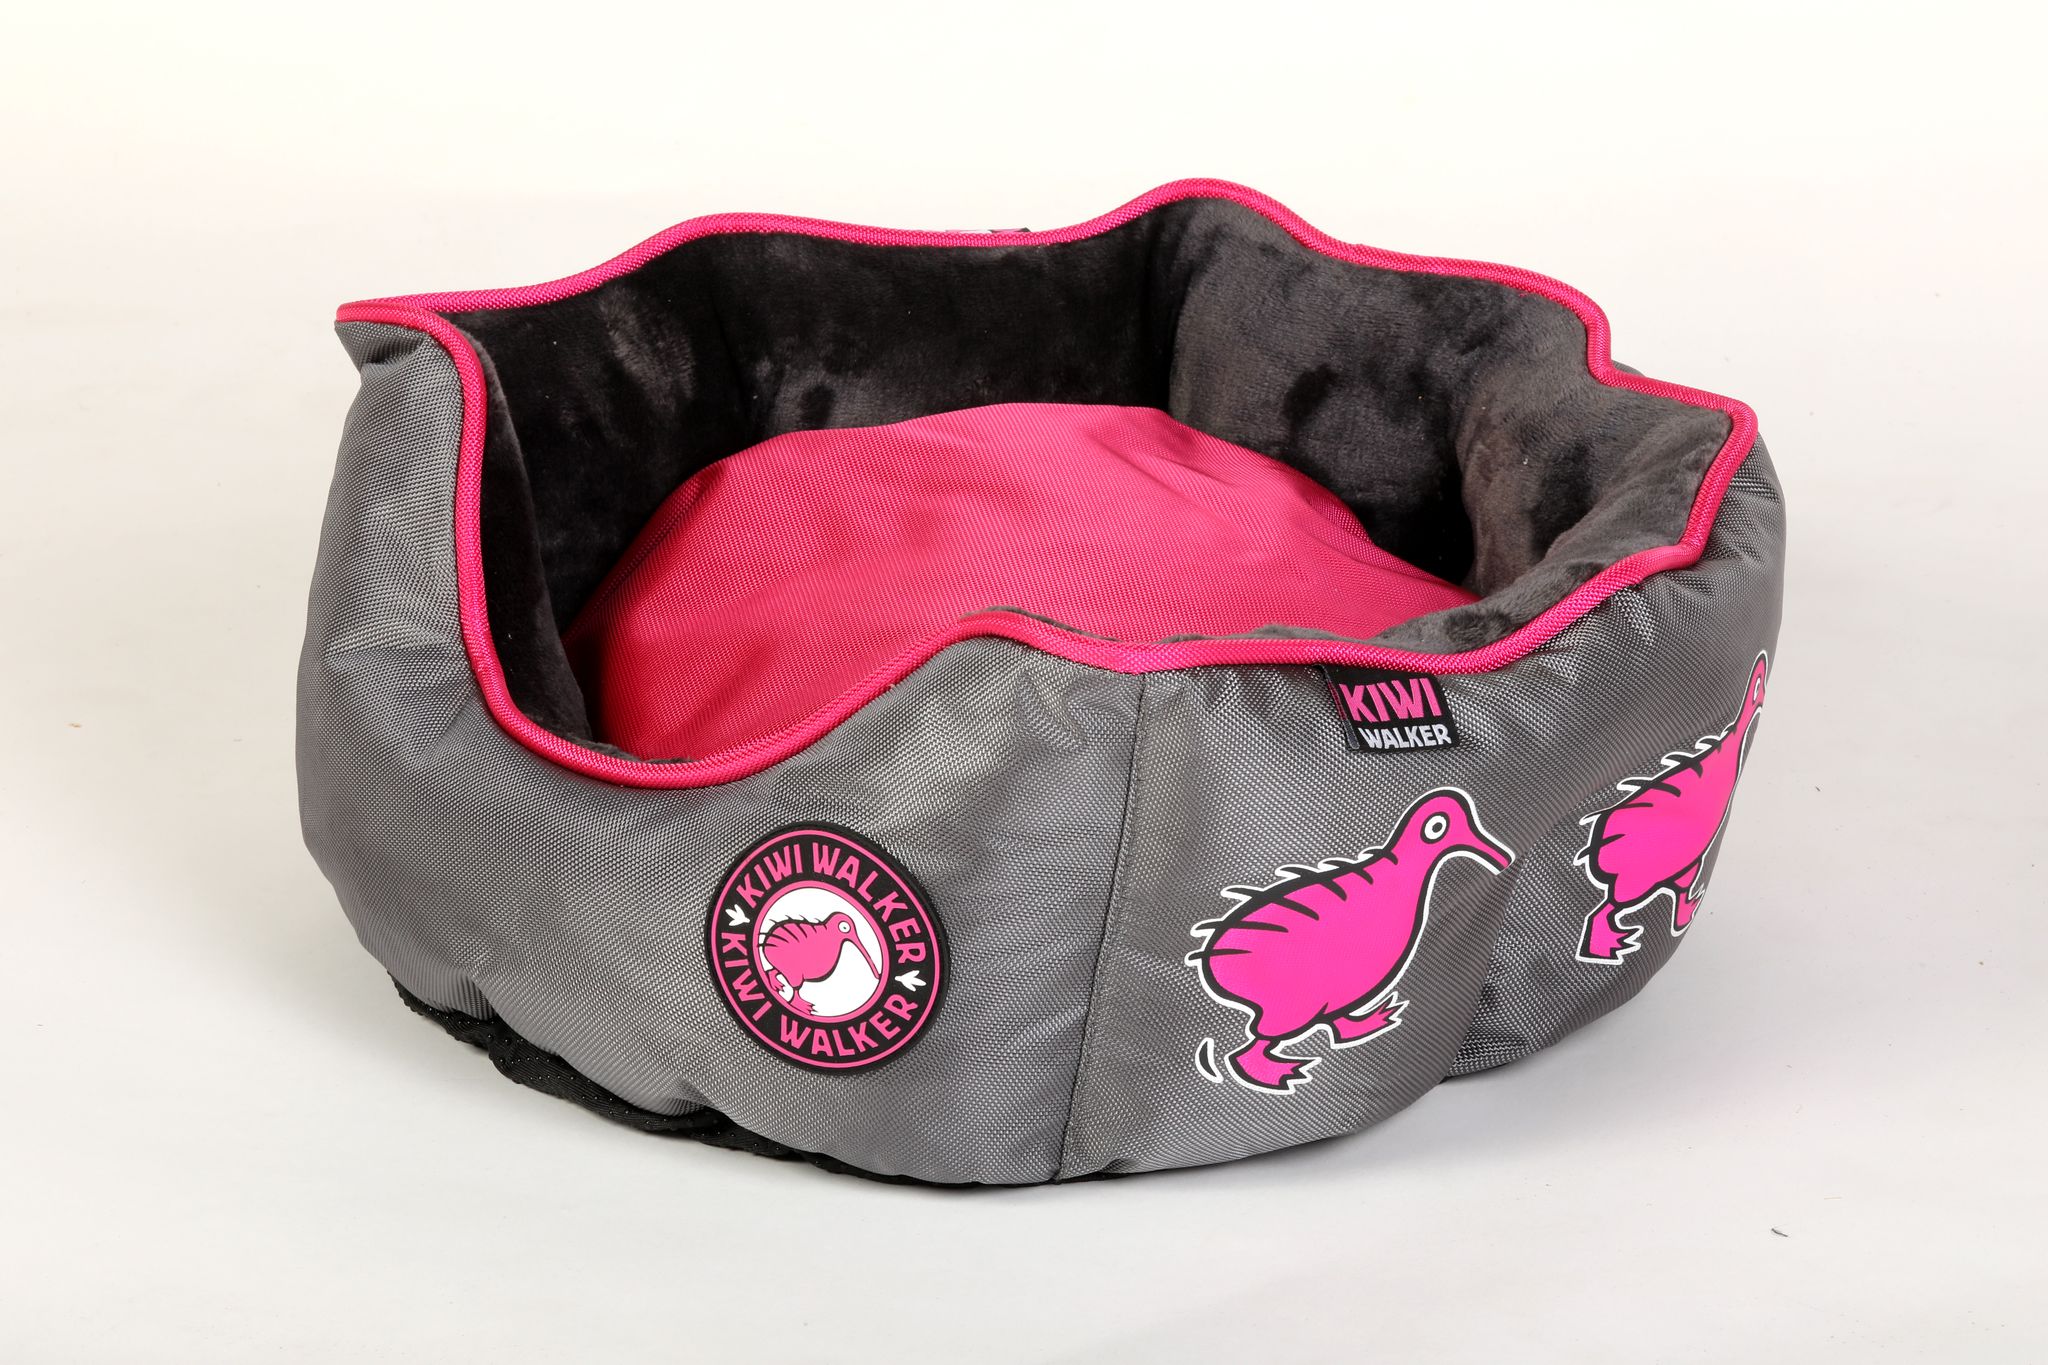 Pelech Kiwi Walker Running Oval Bed růžová/šedá Velikost: L - 55×55×20cm